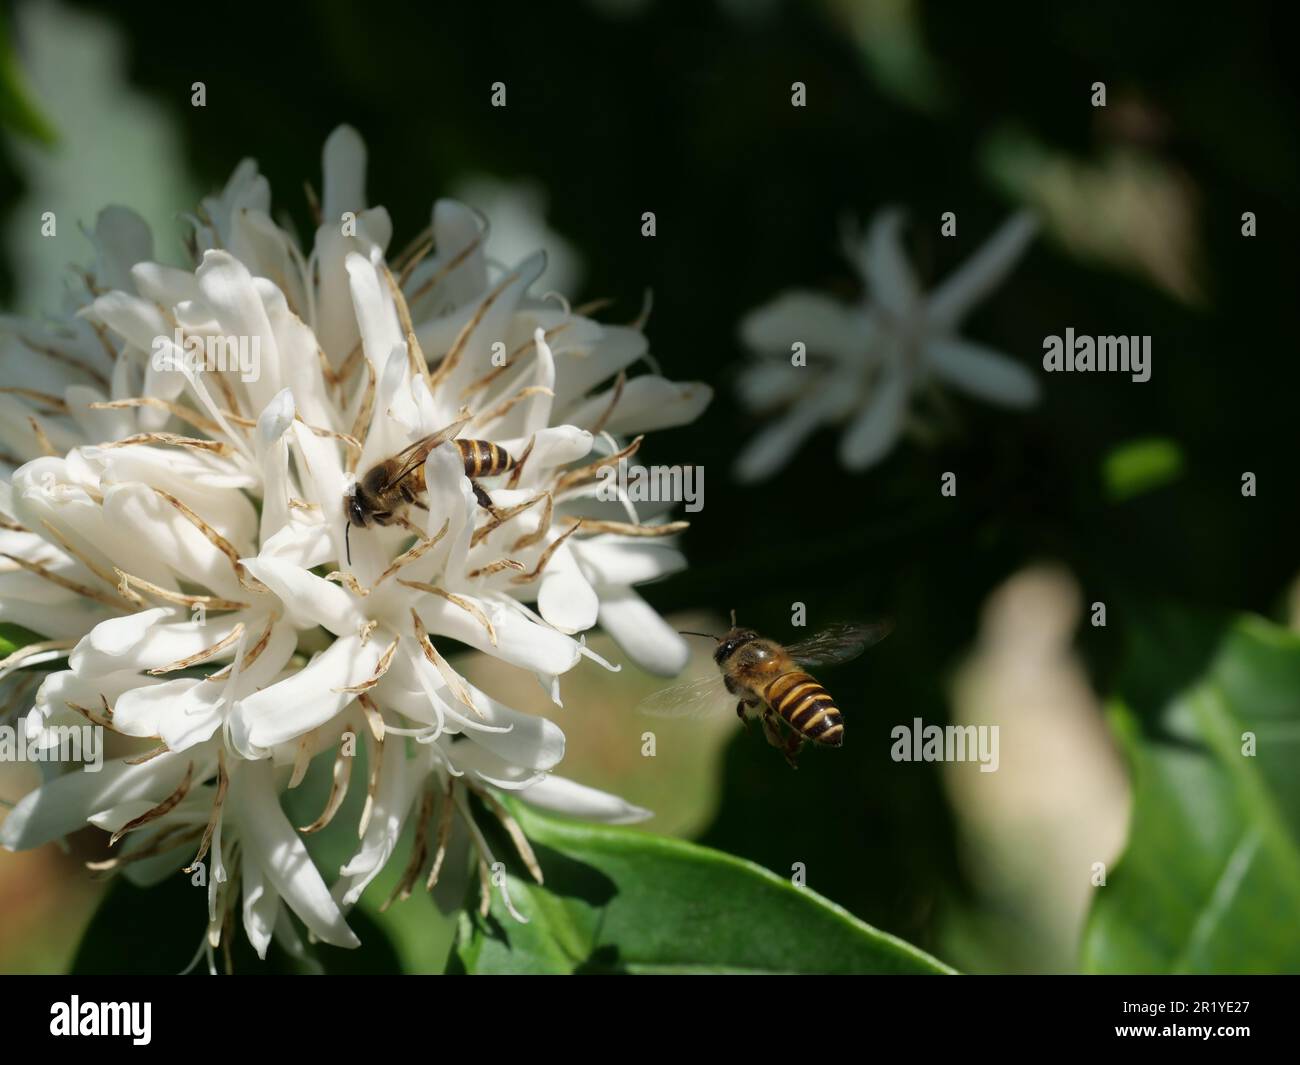 Honigbiene auf Robusta-Kaffee blüht auf Baumpflanze mit grünem Blatt mit schwarzer Hintergrundfarbe. Blütenblätter und weiße Bühnen blühender Blumen Stockfoto